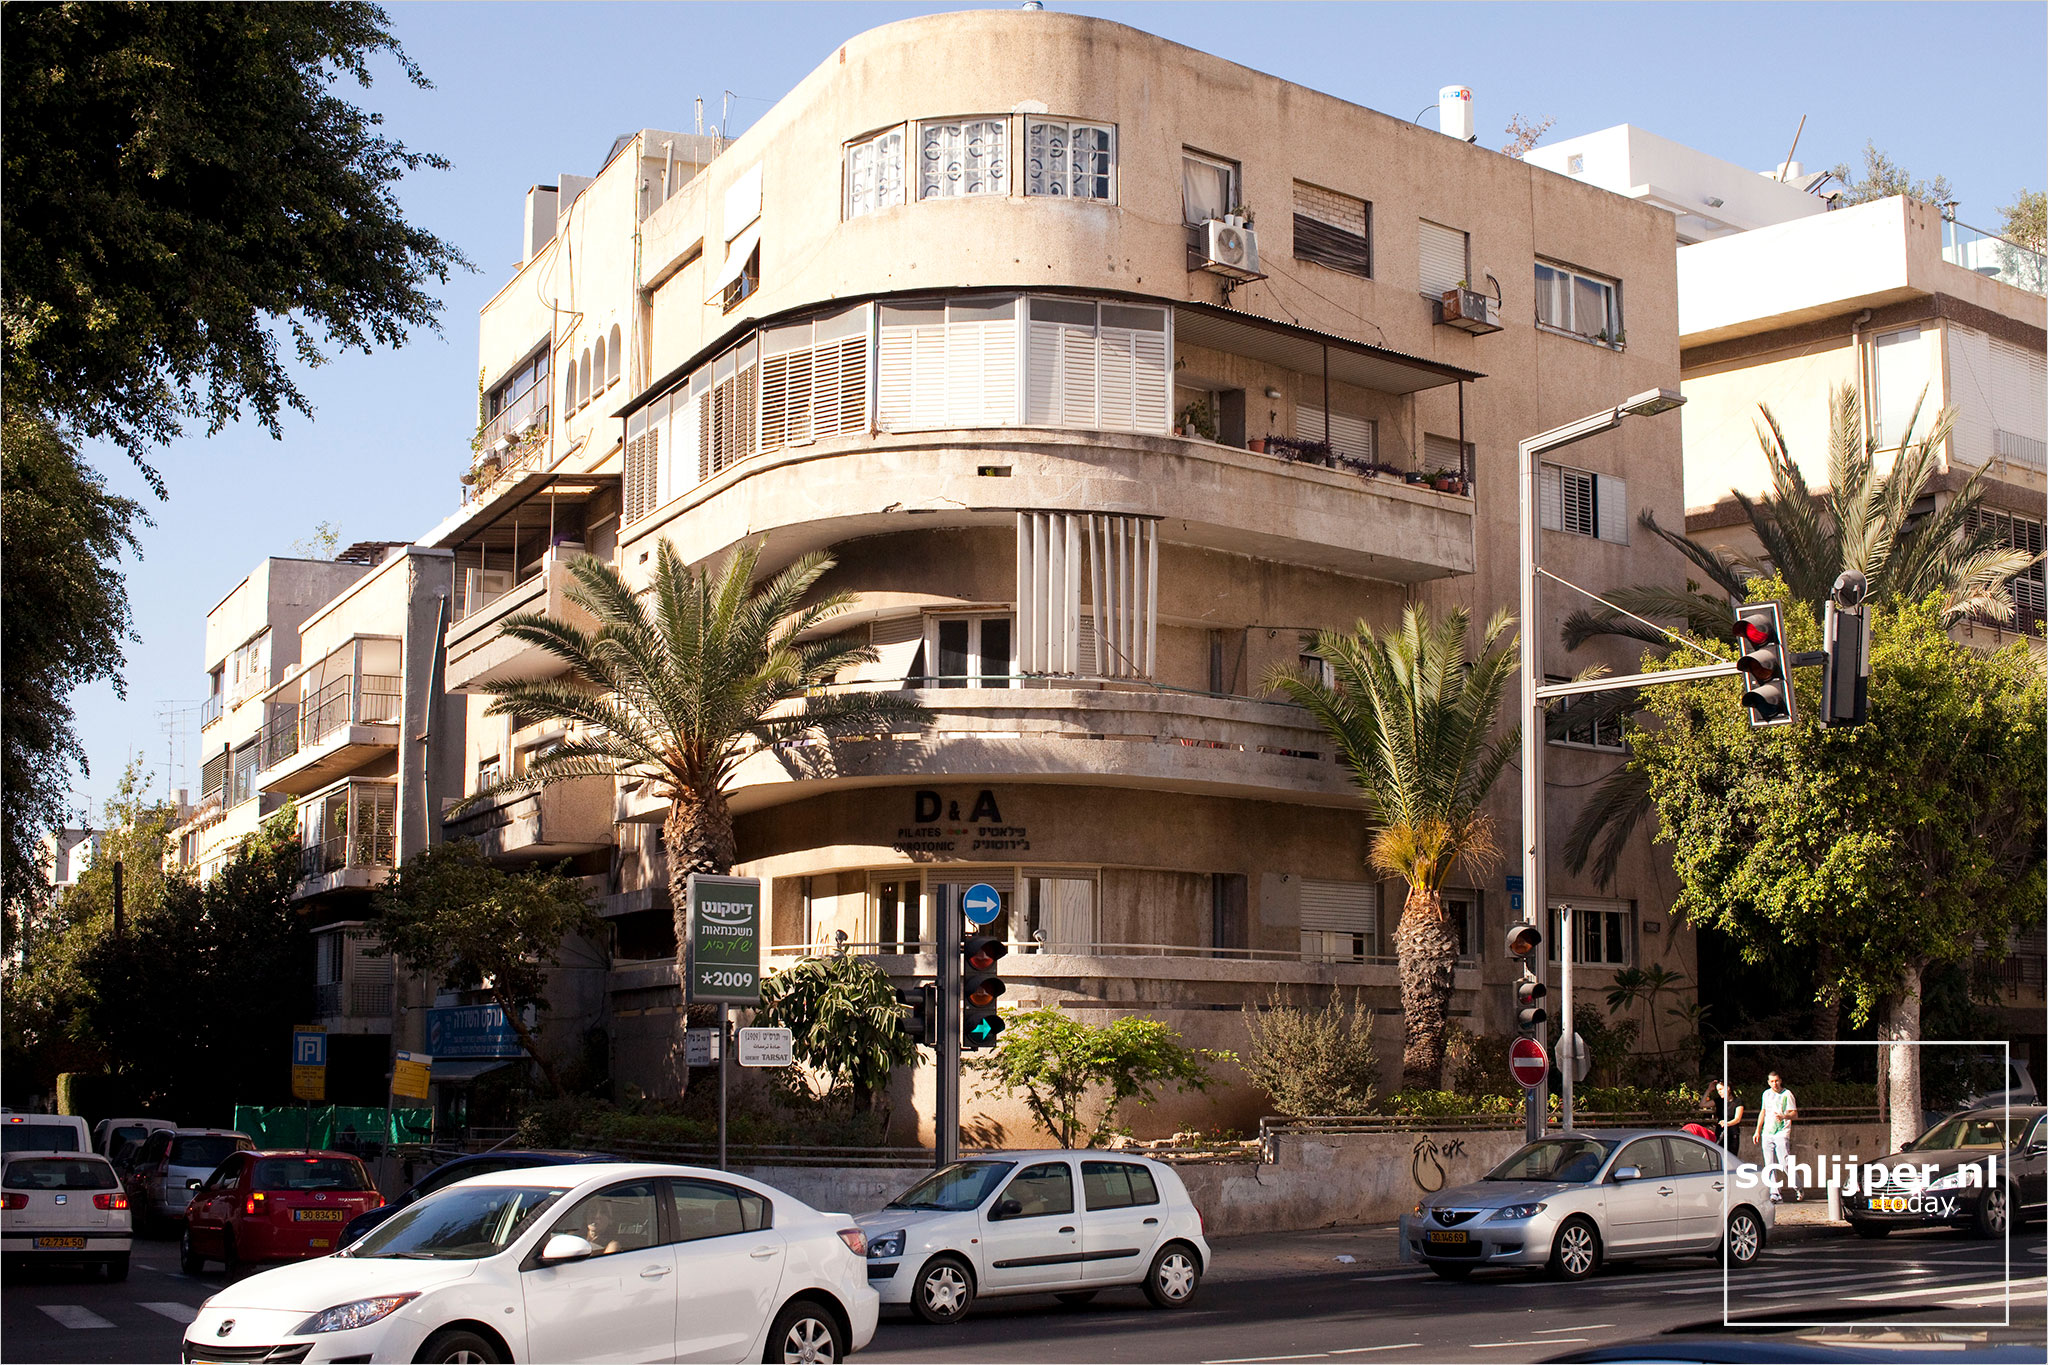 Israel, Tel Aviv, 3 december 2010